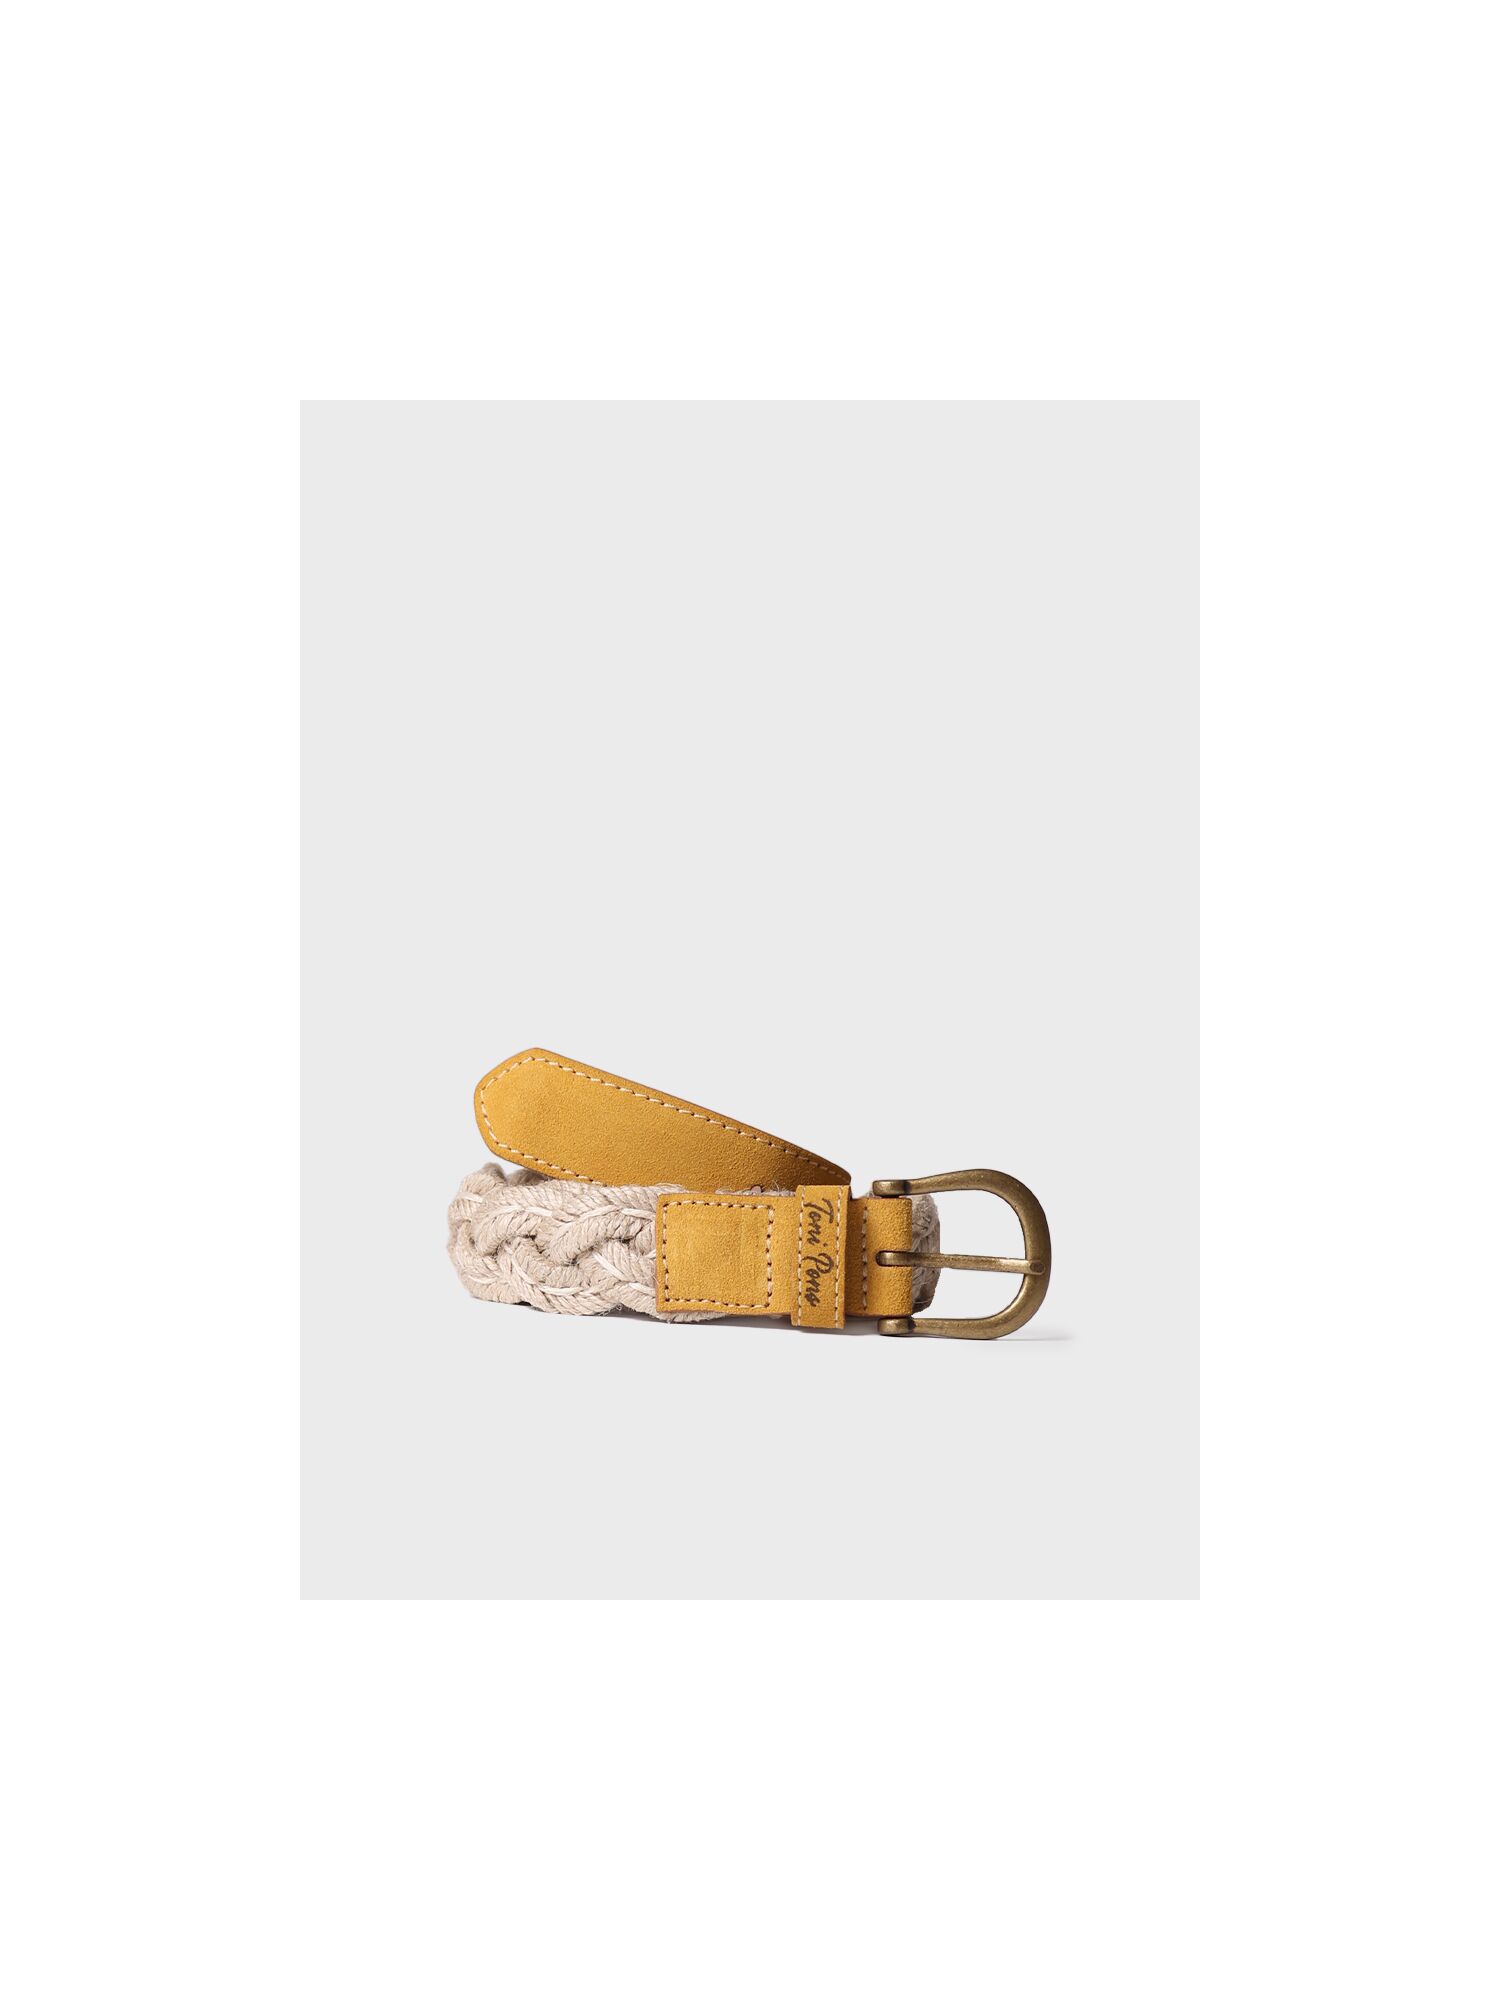 Cinturón de verano de mujer en color amarillo - NORA